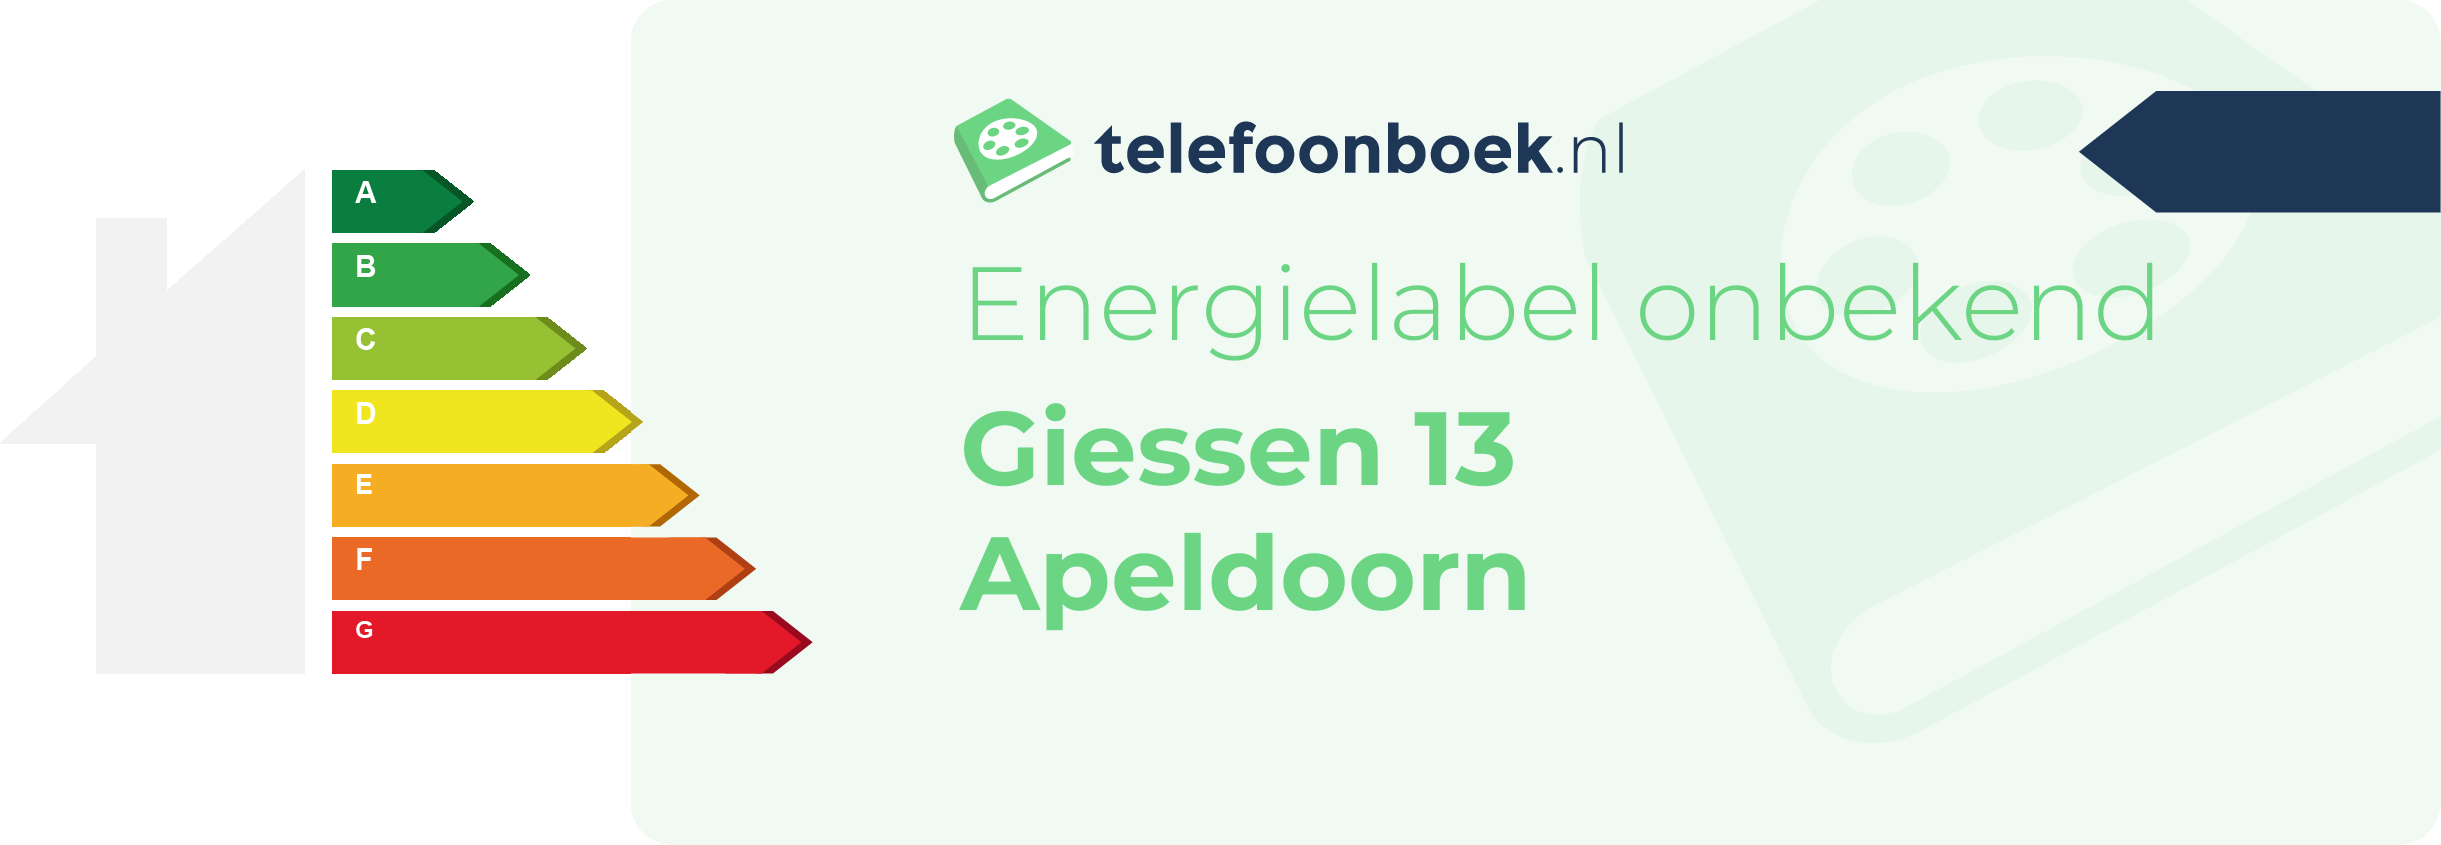 Energielabel Giessen 13 Apeldoorn